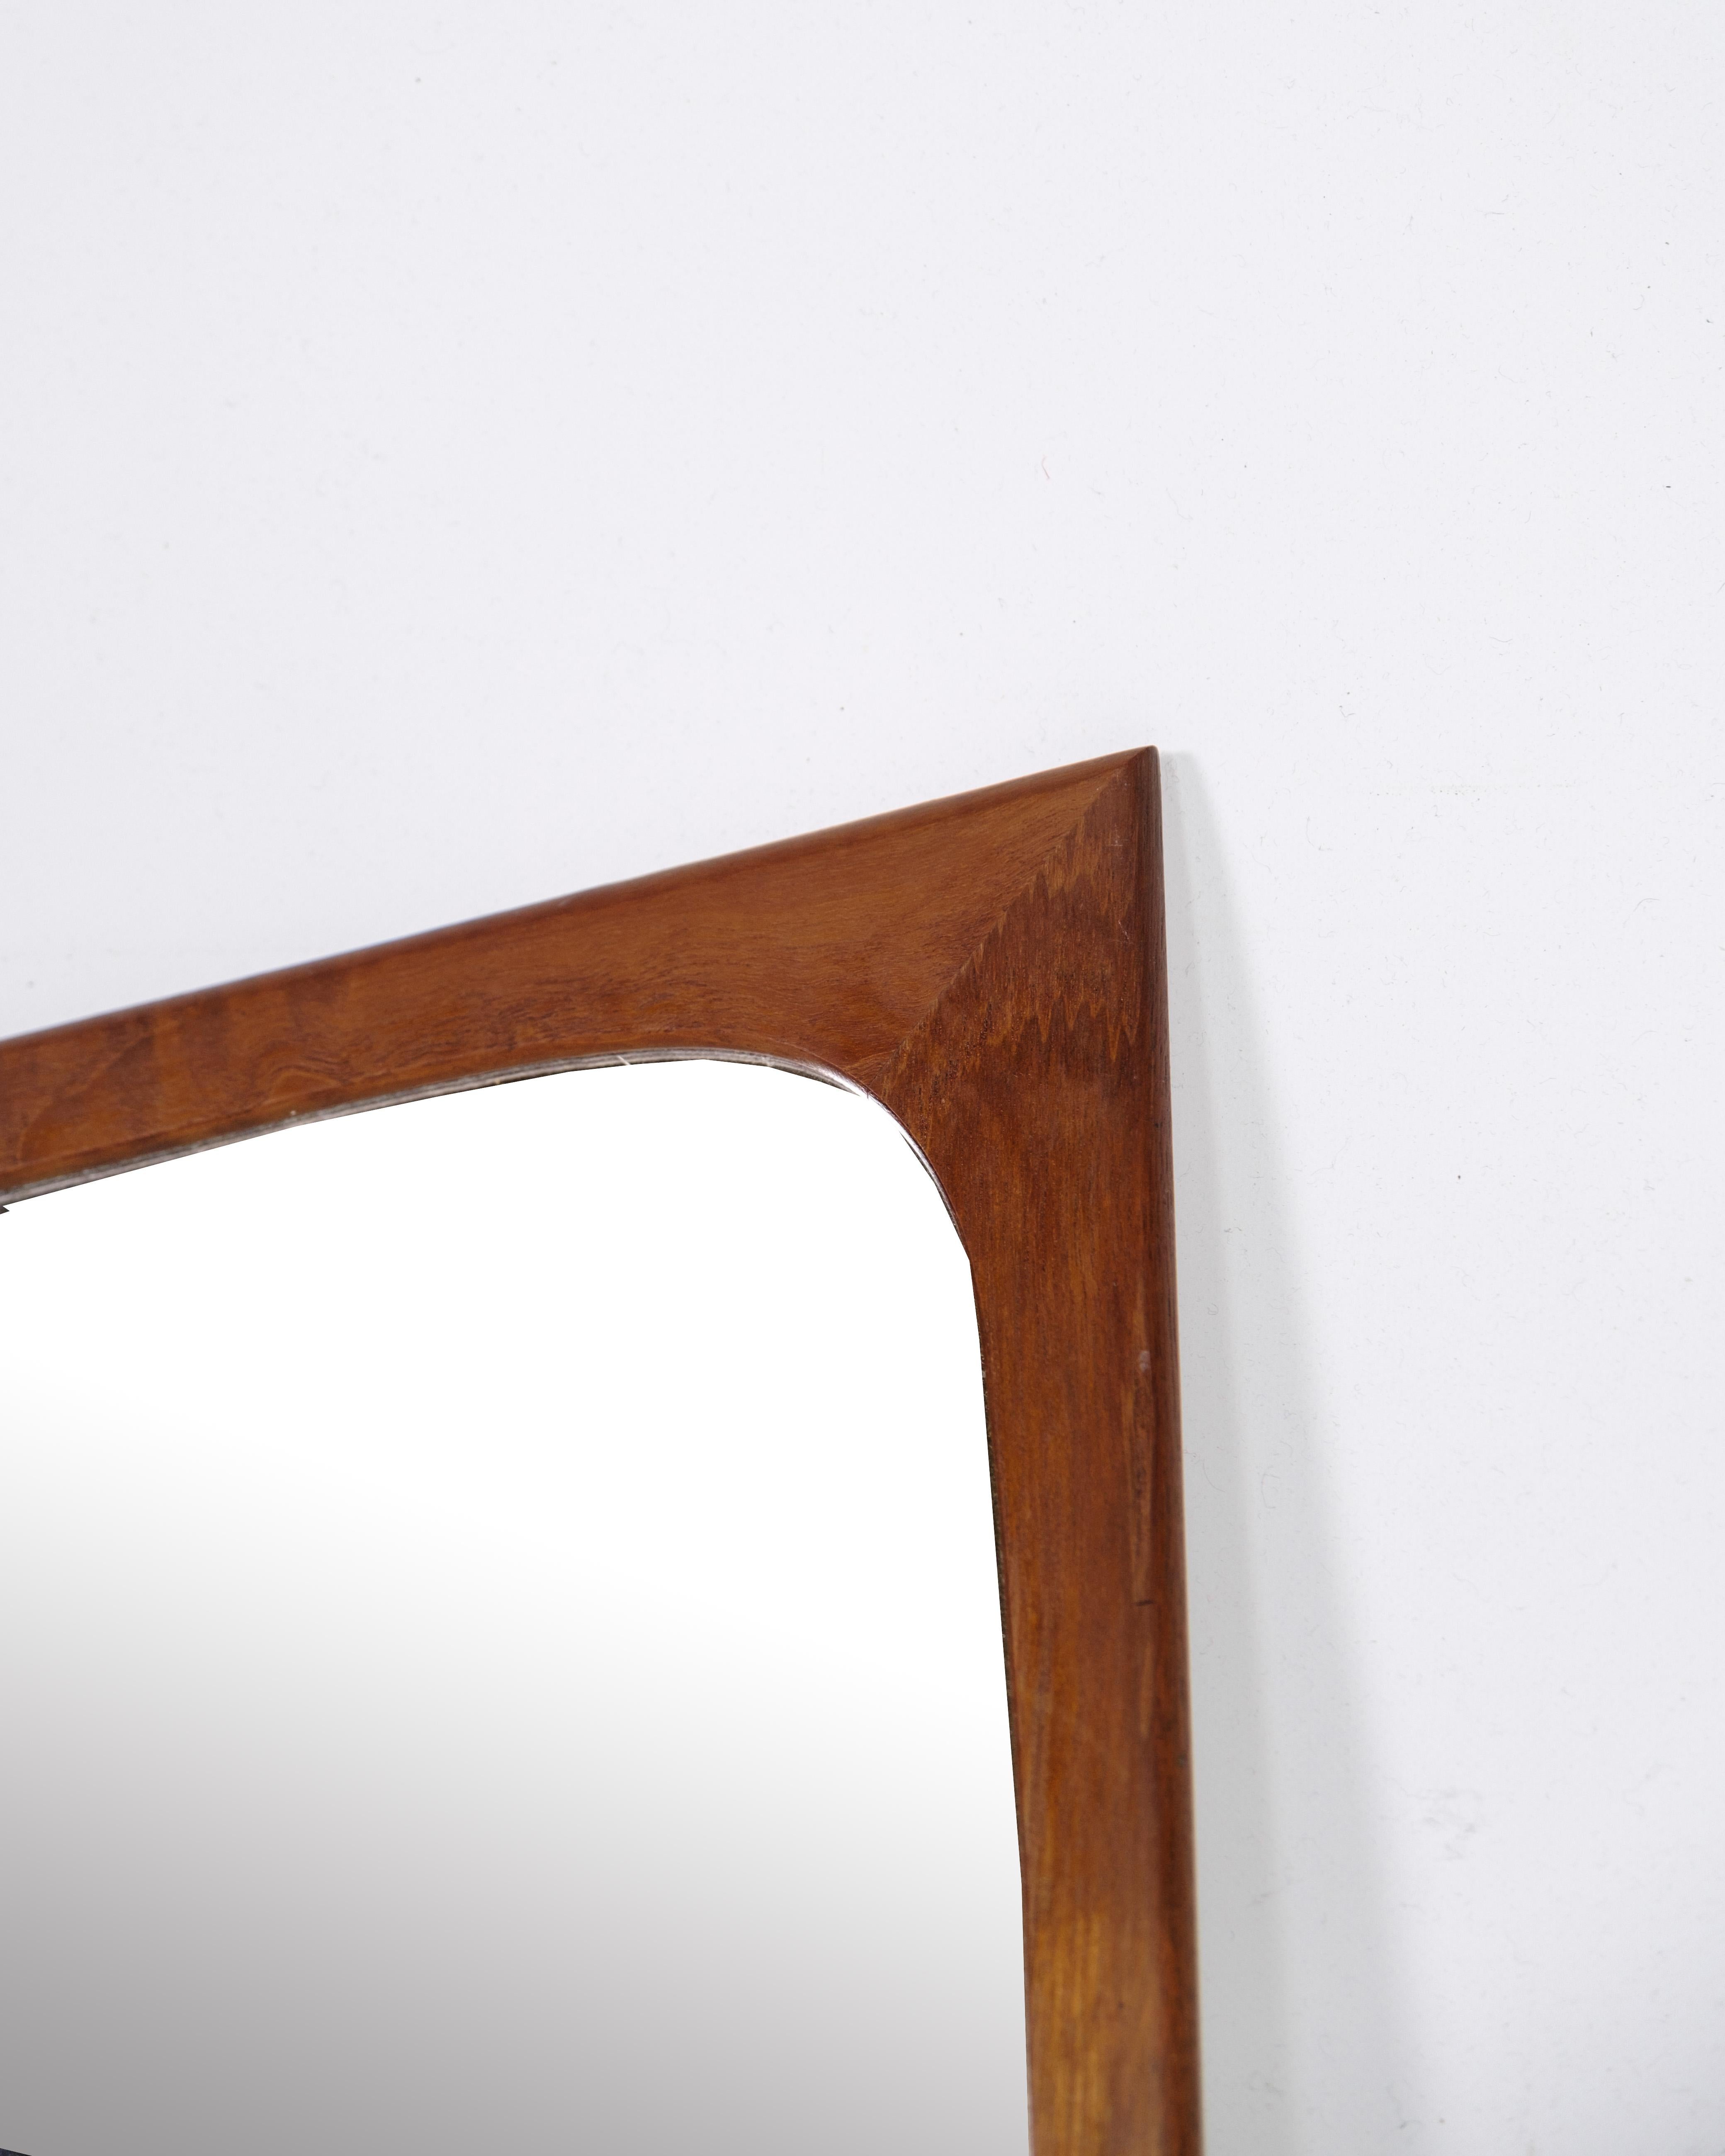 Ein schöner Spiegel mit einem Rahmen aus Teakholz, der von Aksel Kjersgaard in den 1960er Jahren entworfen wurde.

Dieser Spiegel zeigt den zeitlosen Charme und die exquisite Handwerkskunst, die für das dänische Design aus der Mitte des 20.